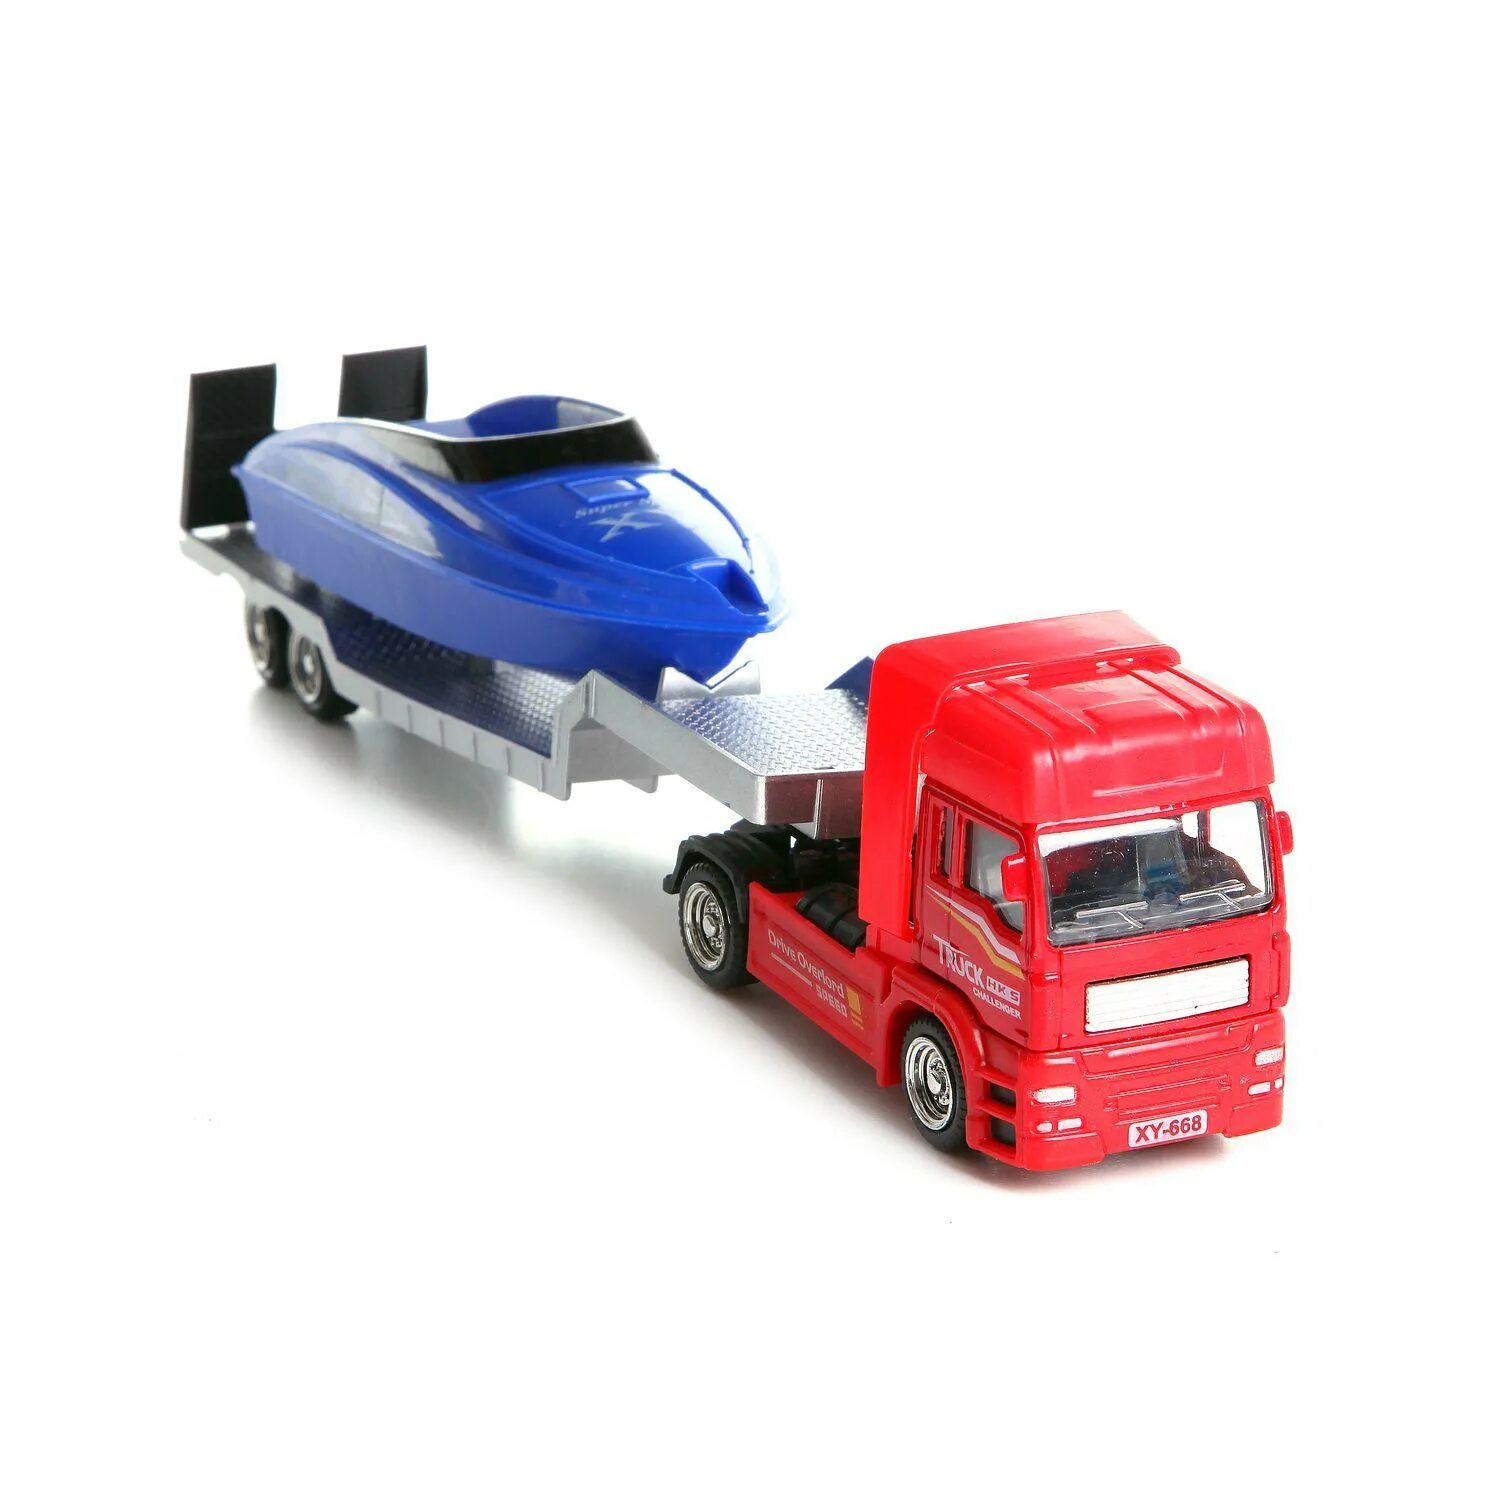 Купить грузовую машинку. Игрушка грузовой автомобиль 798 Champion Truck. Красный грузовик игрушка. Красный тягач. KIDTIME набор машинок и грузовик красный большой.